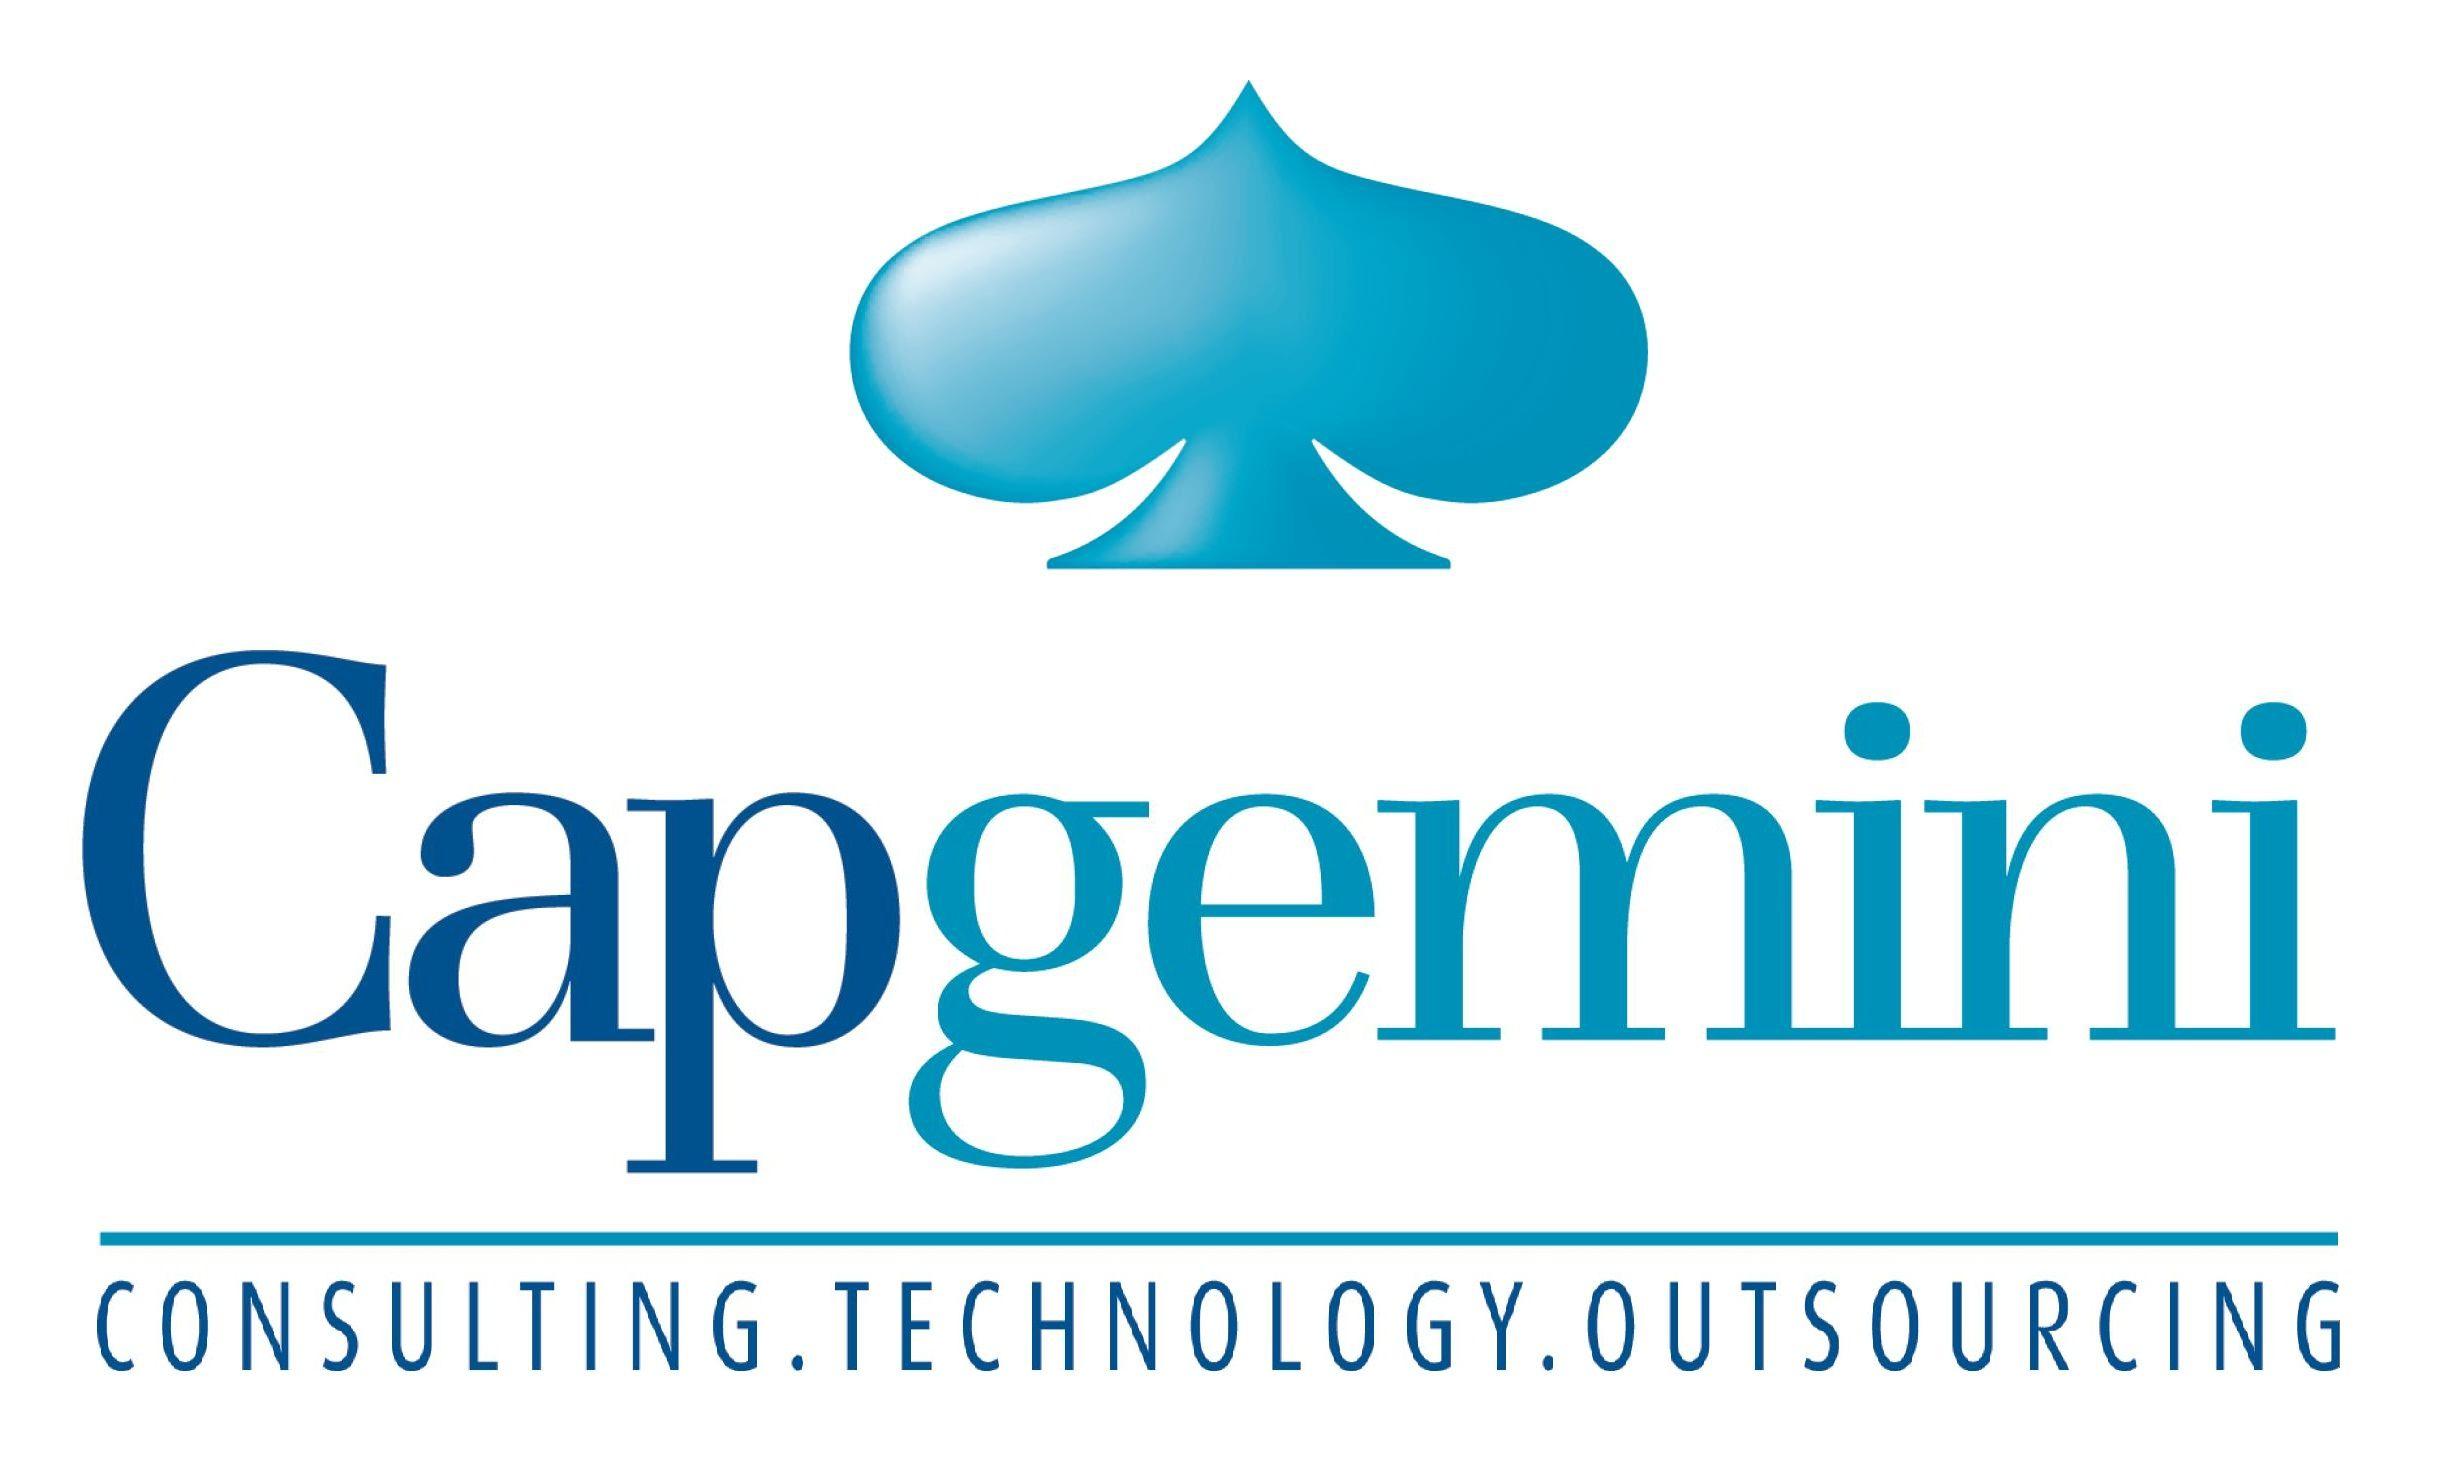 Capgemini Logo - Capgemini Logo 1 | Caproasia.com